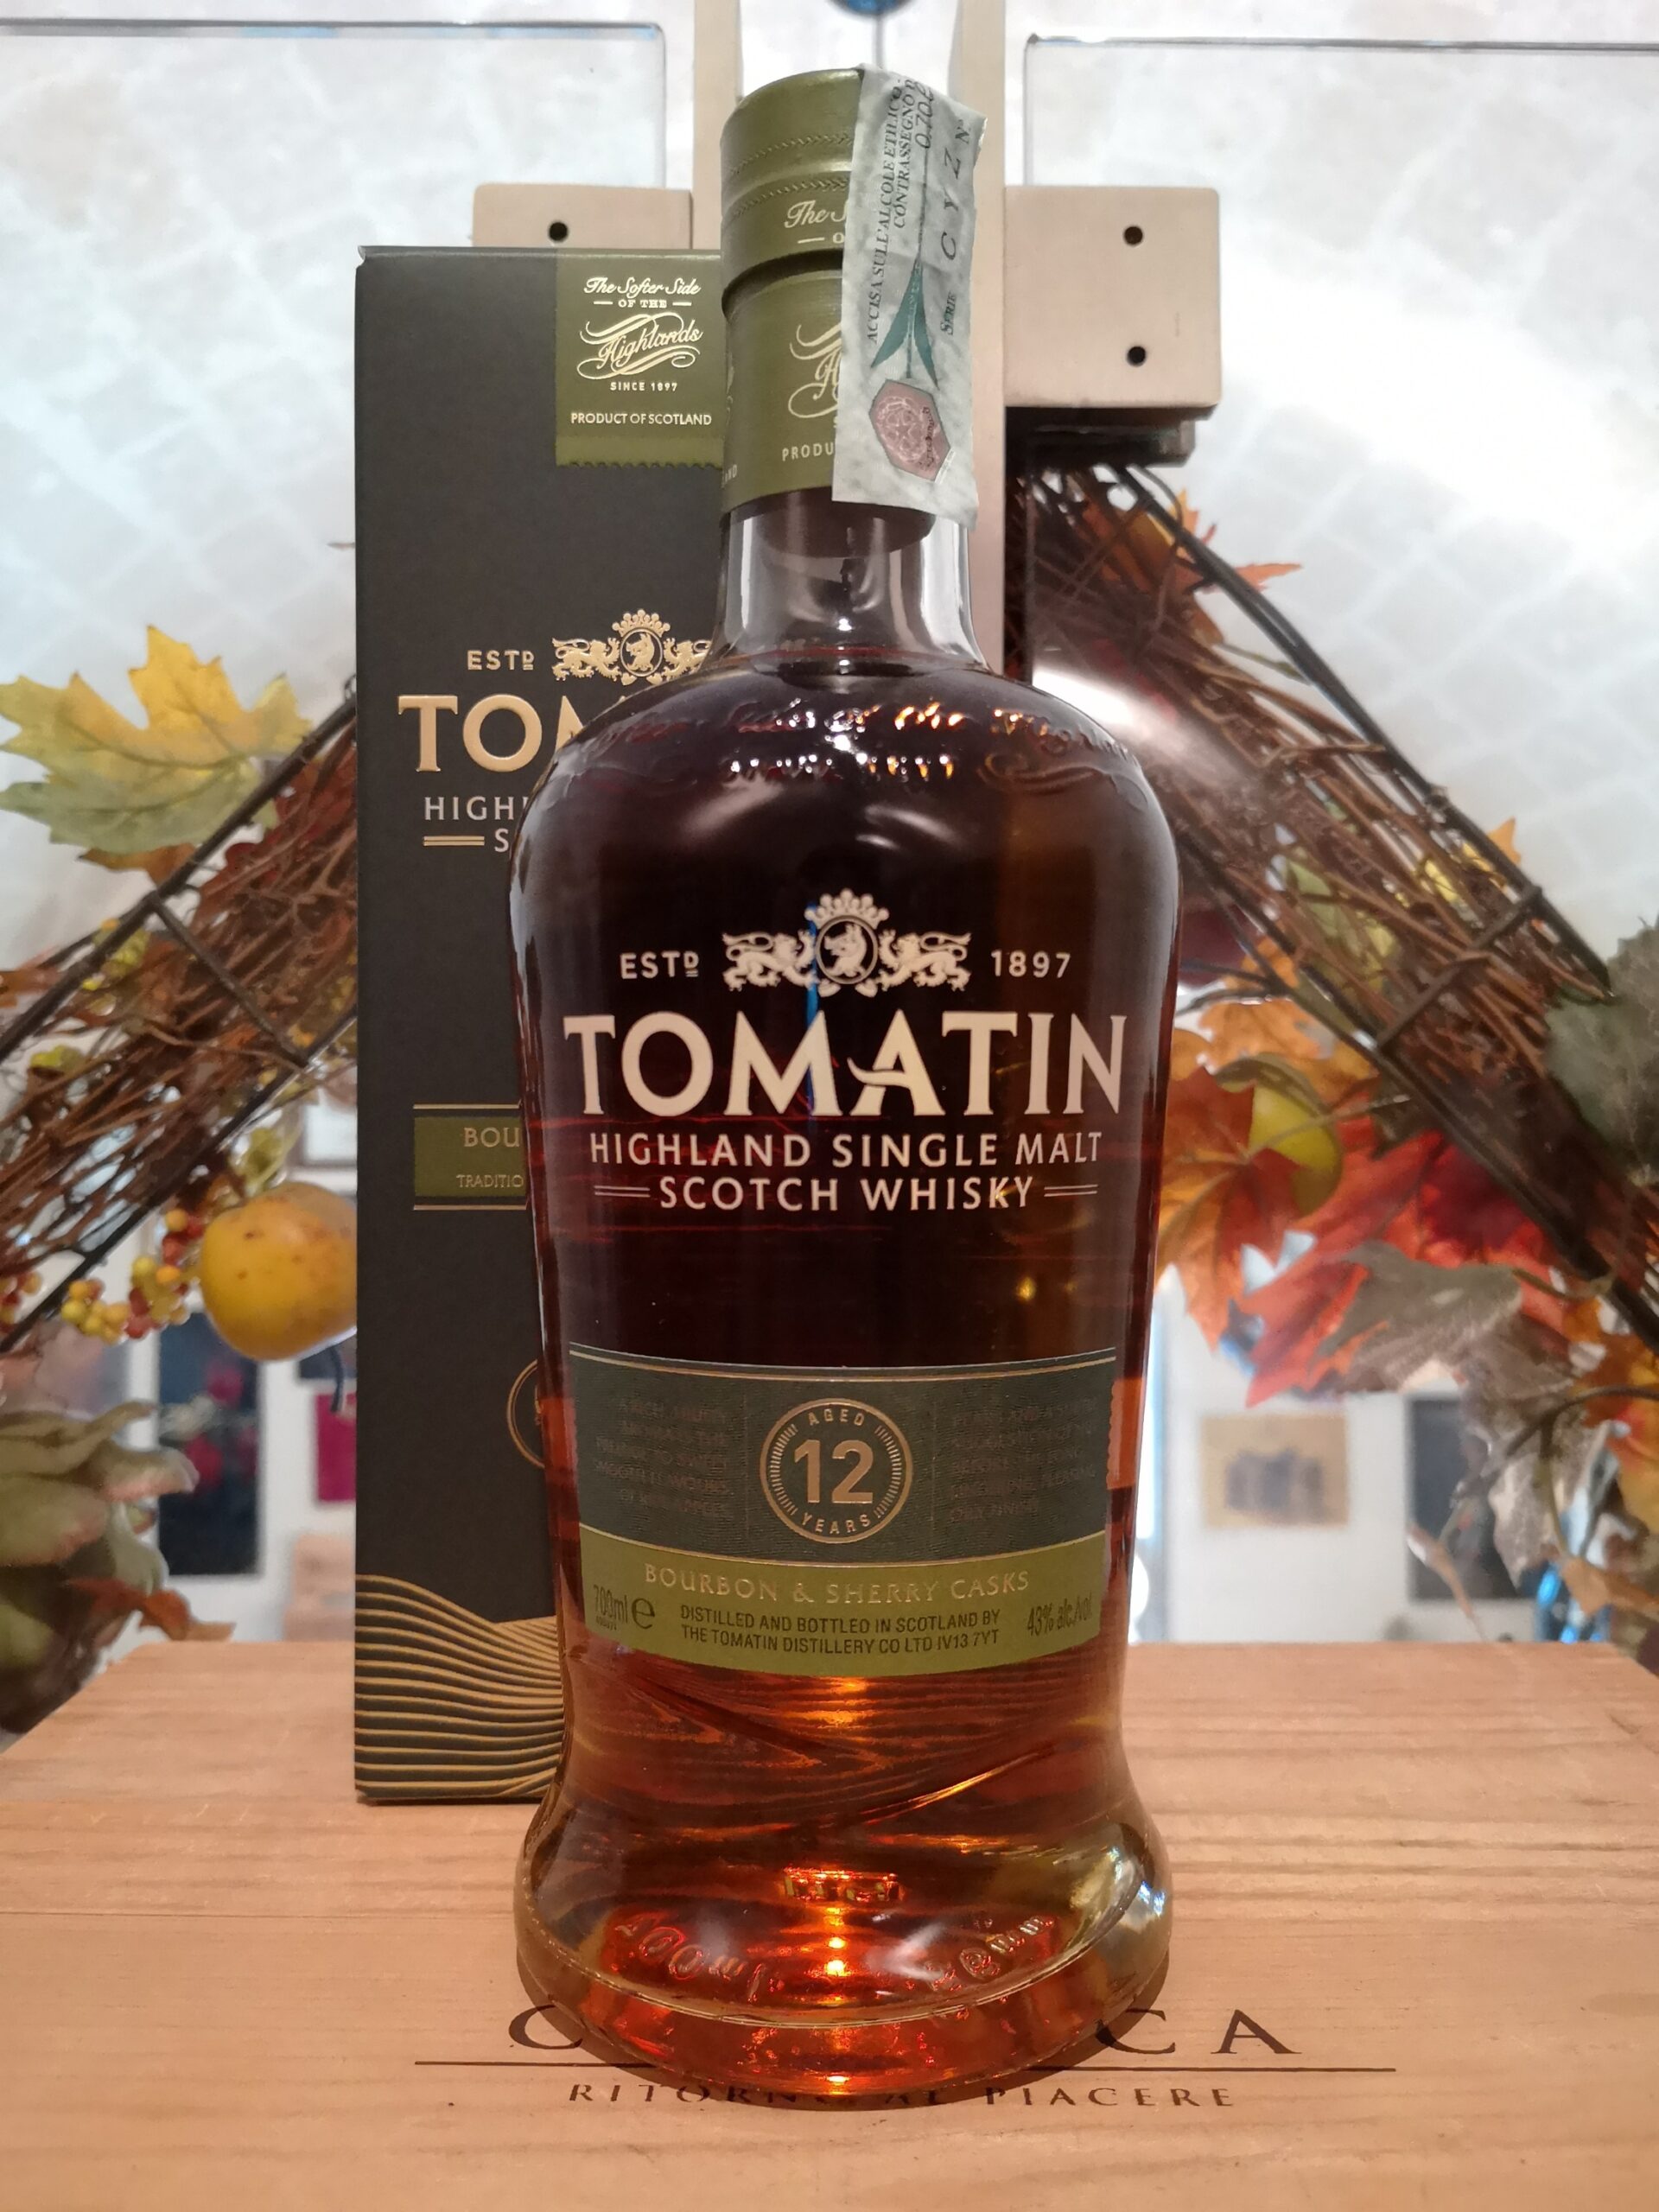 Tomatin Highland Single Malt Scotch Whisky 12 YO Bourbon & Sherry Cask